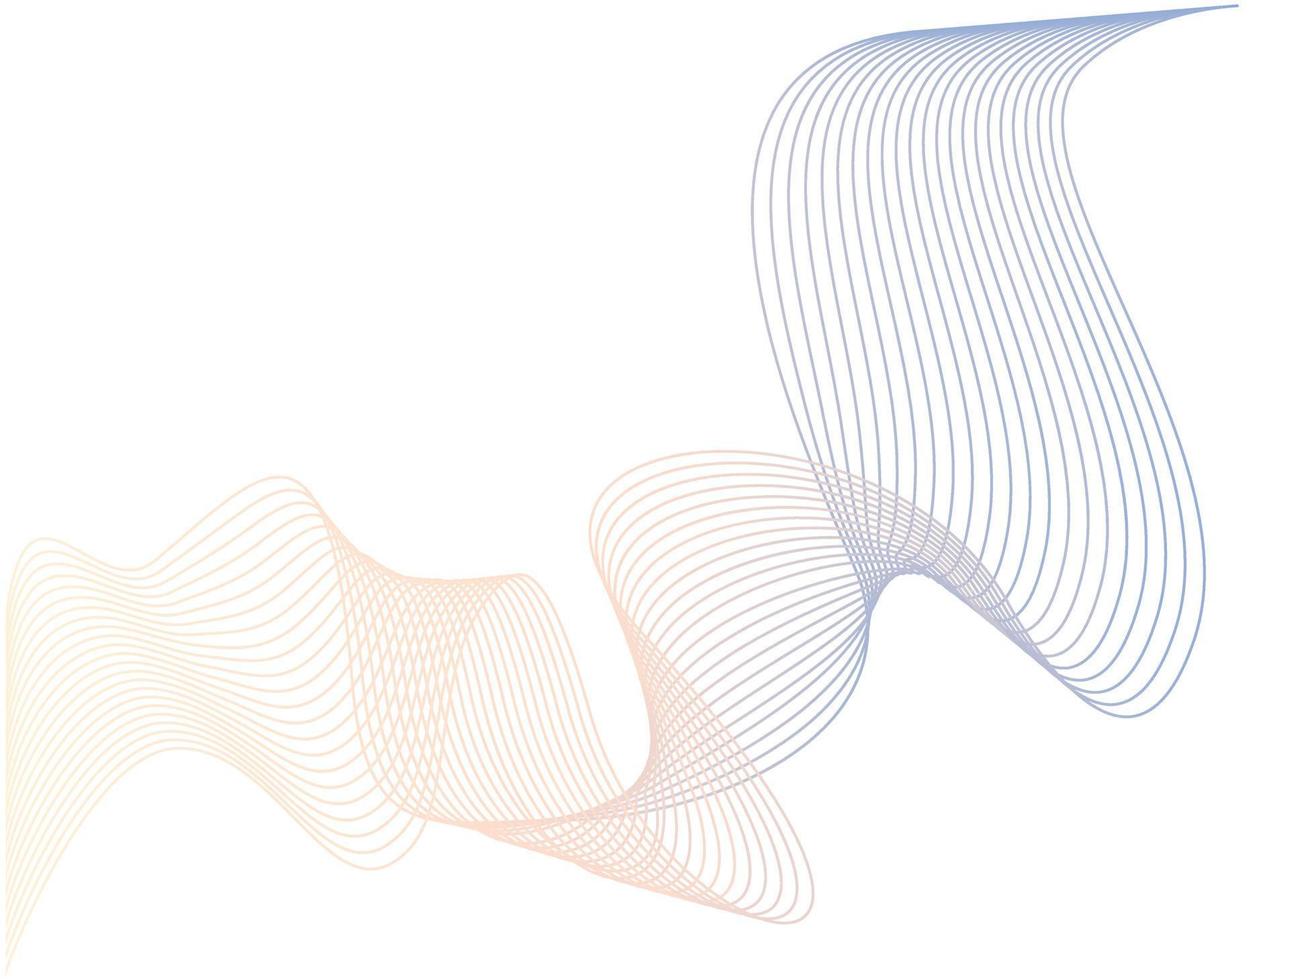 onda de línea abstracta - fondo de líneas curvas - fondo ondulado abstracto vector